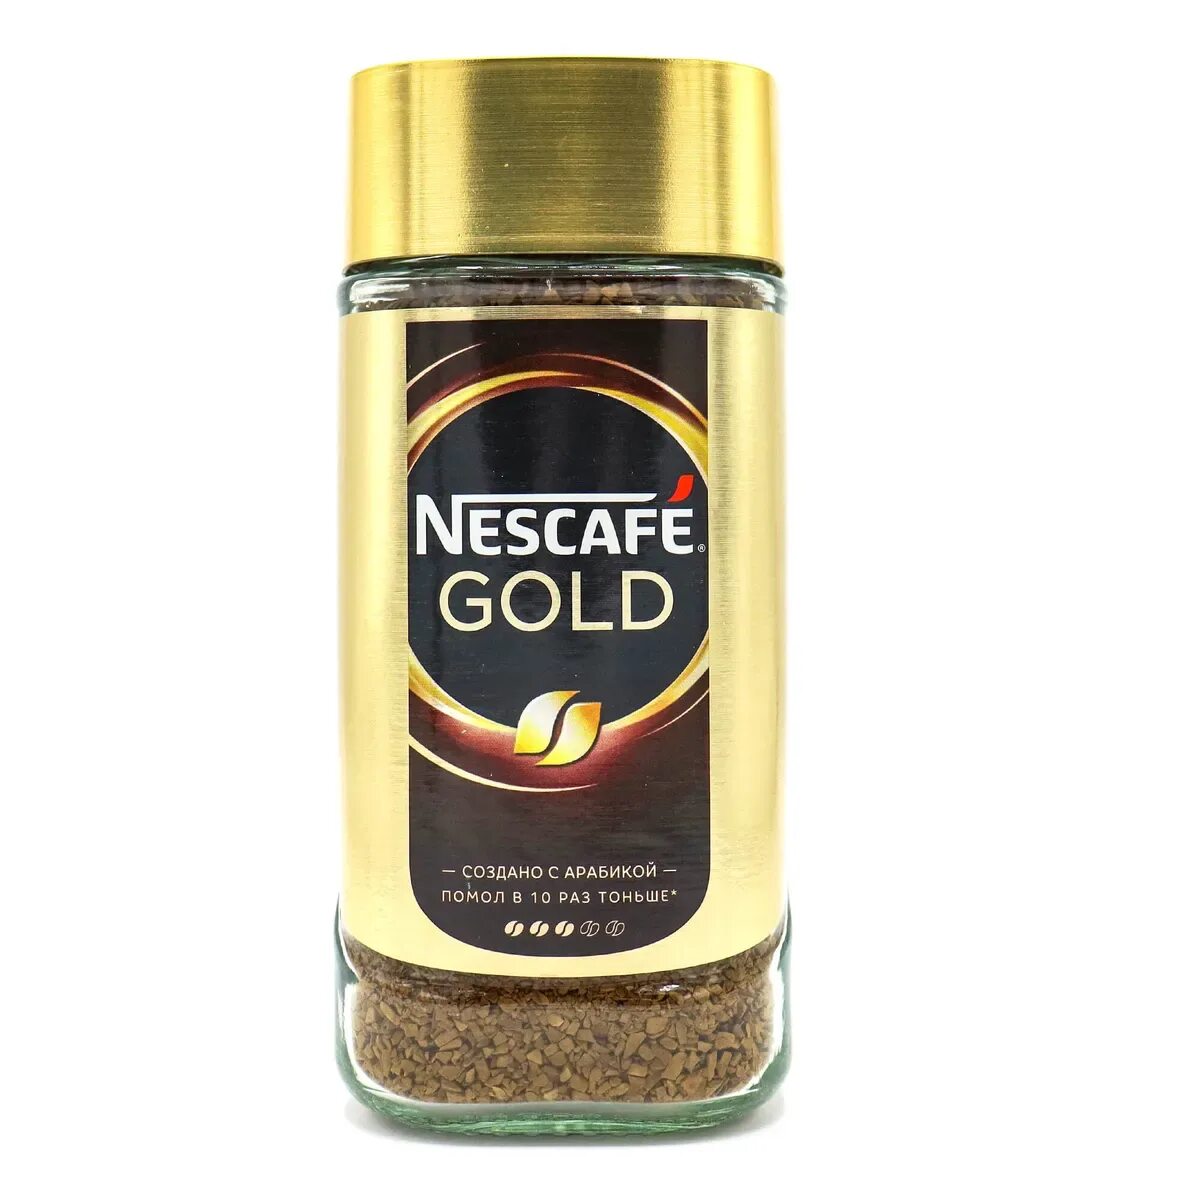 Кофе Нескафе Голд 190г. Кофе растворимый Nescafe Gold, 190г. Нескафе Голд 190 стекло. Nescafe gold 190г